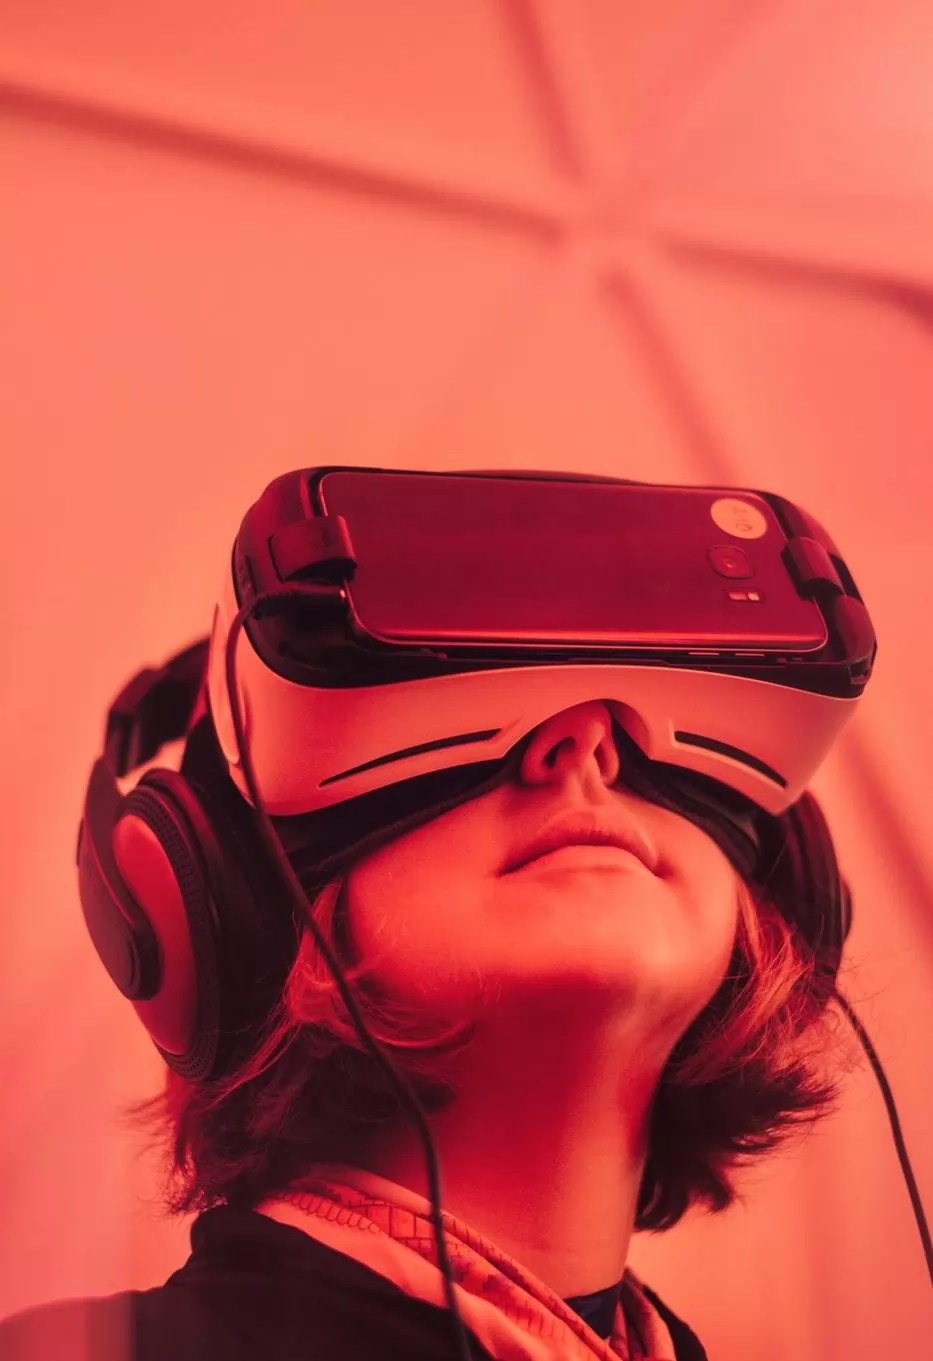 o mercado de realidade aumentada, virtual e mista